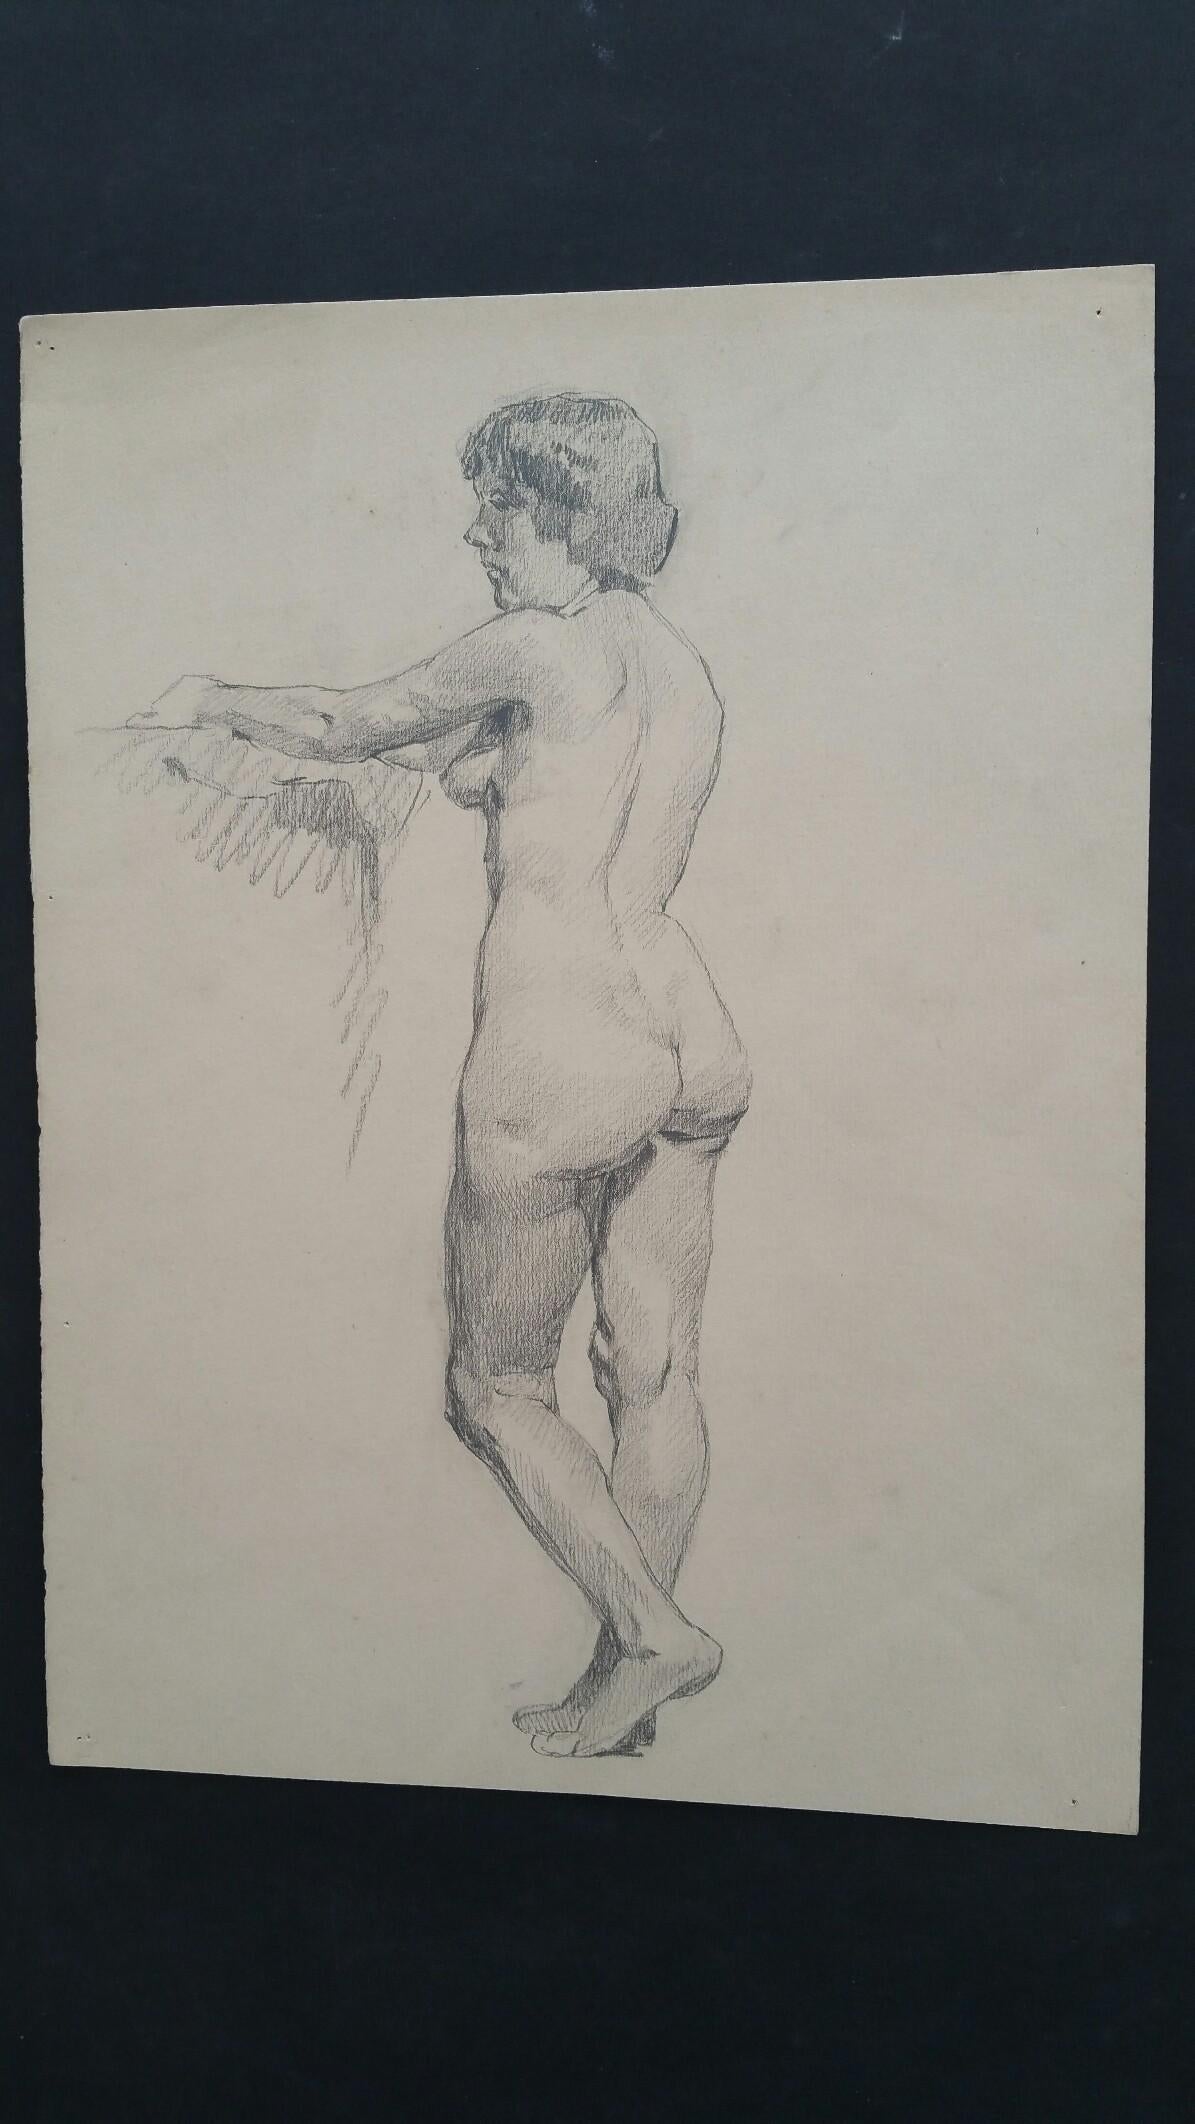 Esquisse au graphite d'une femme nue, debout, en anglais
par Henry George Moon (britannique, 1857-1905)
sur papier d'artiste blanc cassé, non encadré
mesures : feuille 14.5 x 11 pouces 

provenance : de la succession de l'artiste

Rapport de